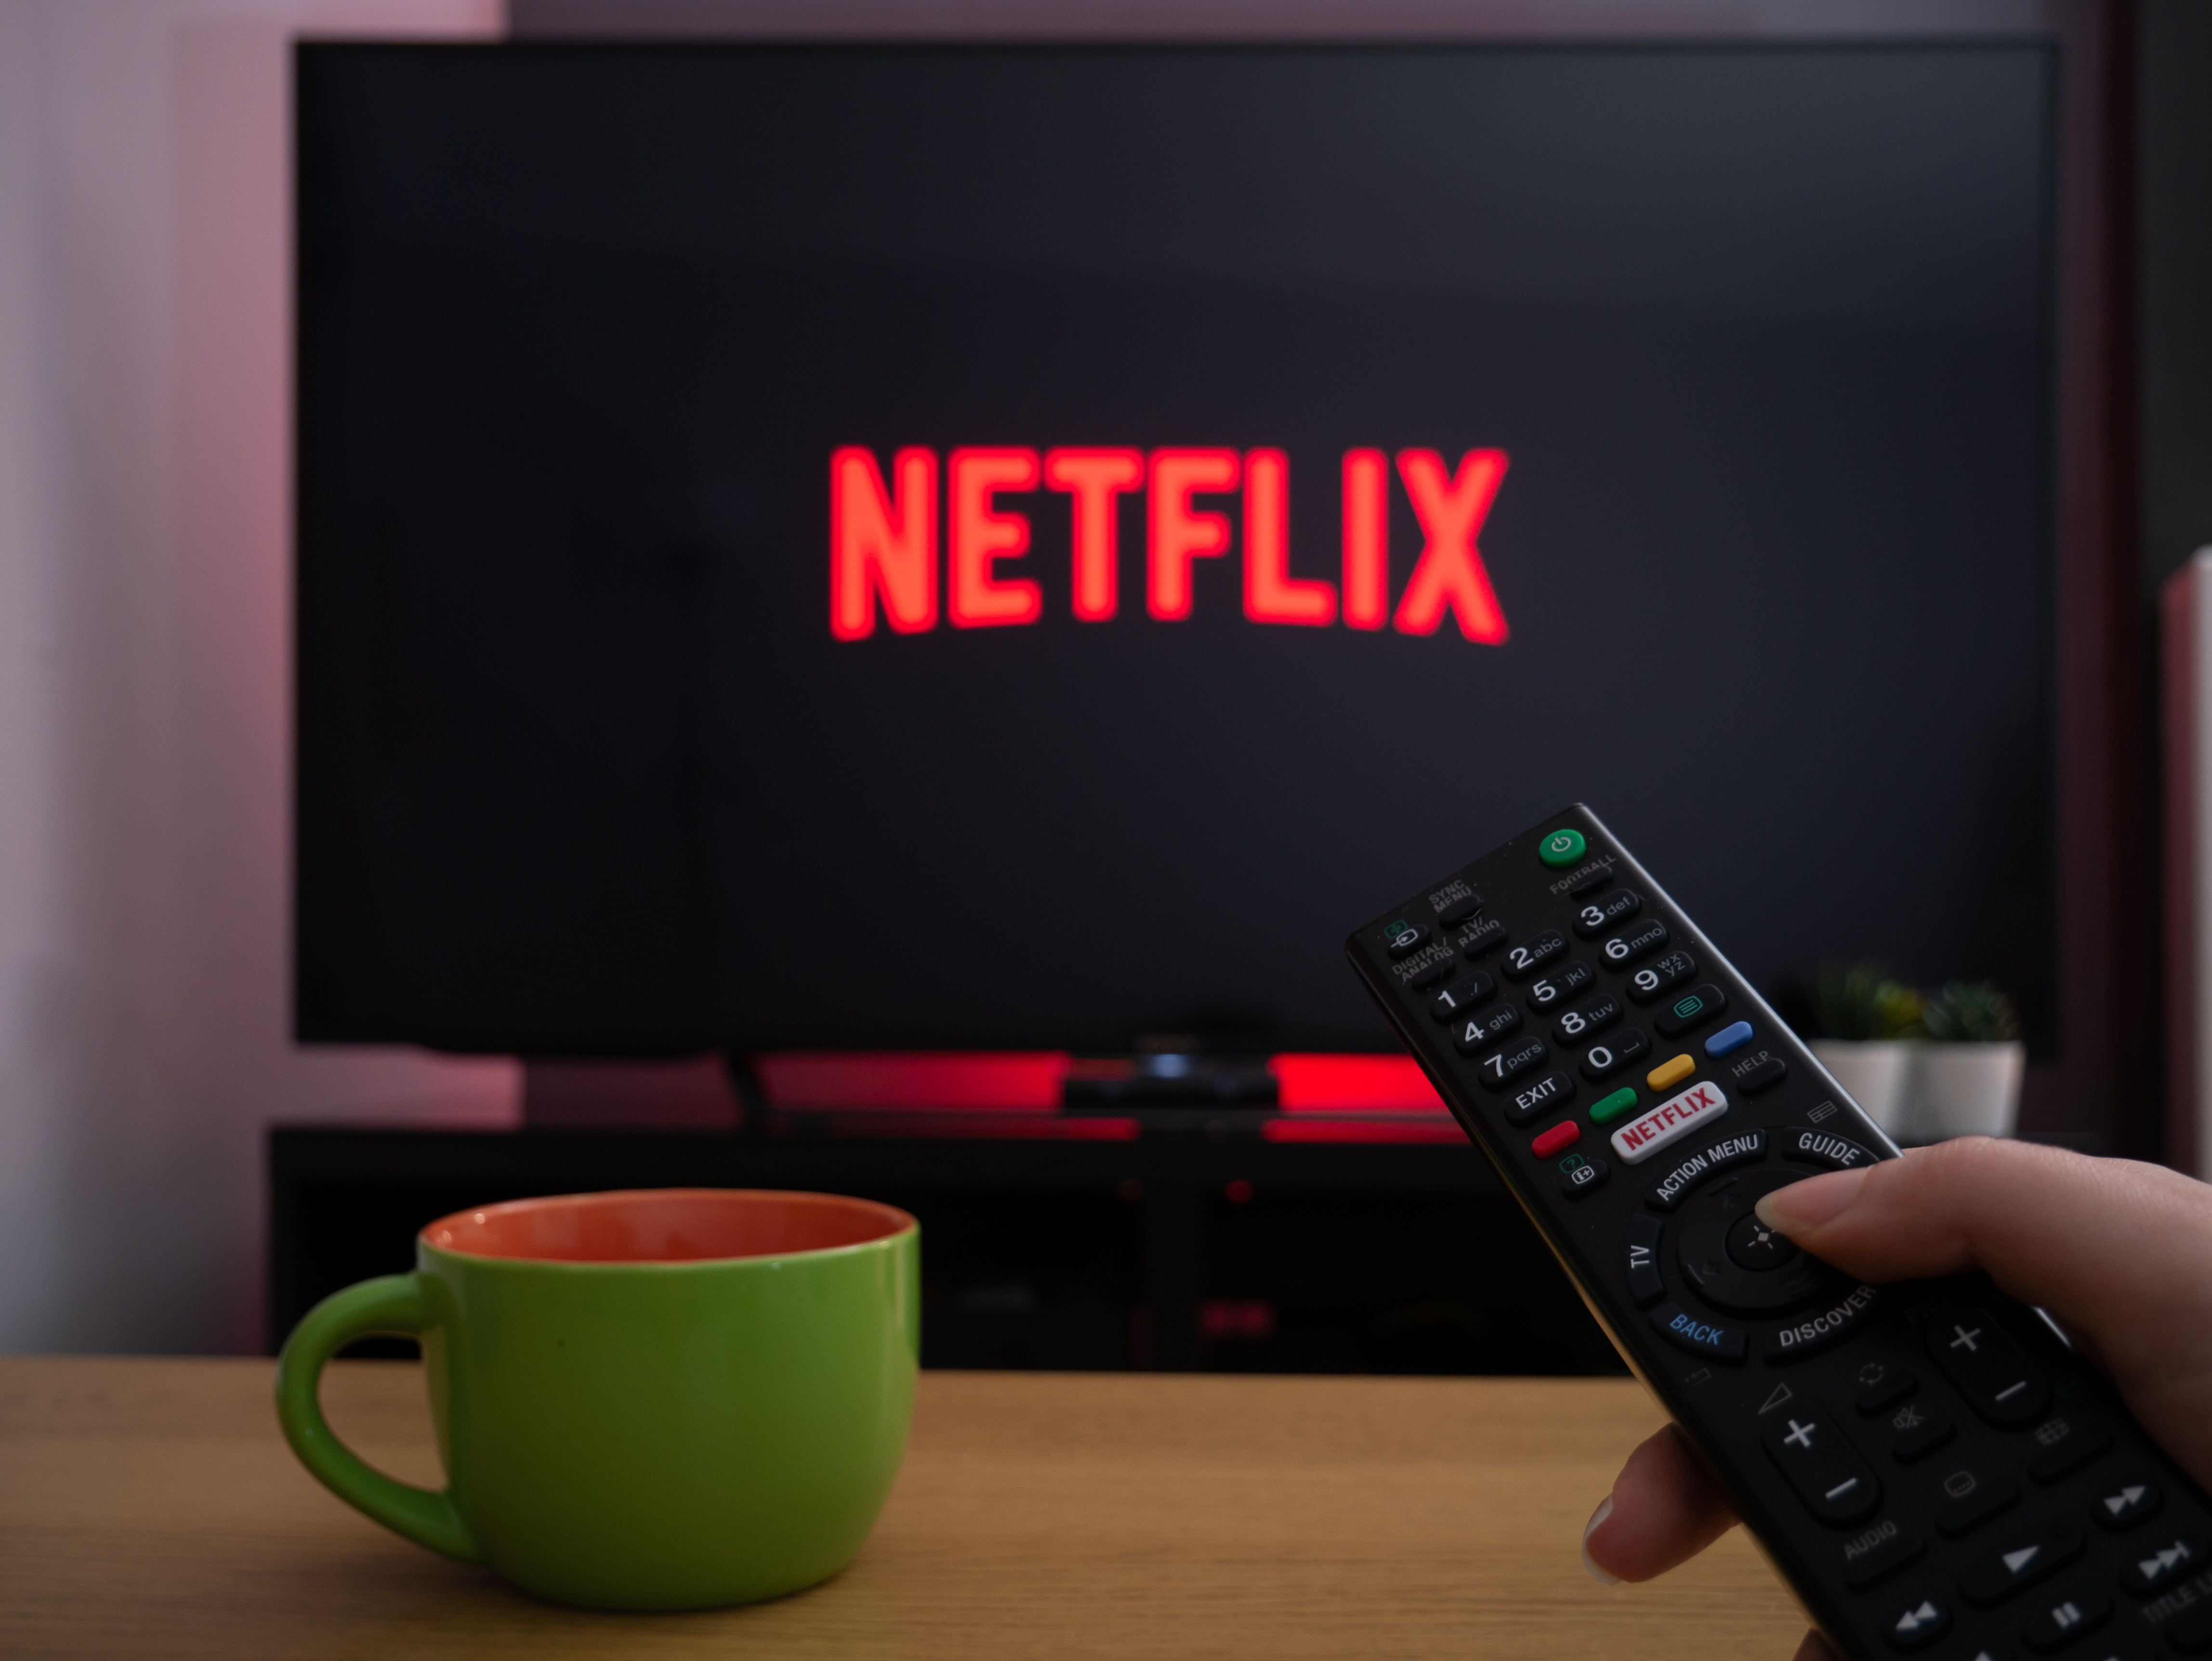 Netflix y la lista actualizada de códigos secretos para ver series y  películas ocultas, SALTAR-INTRO